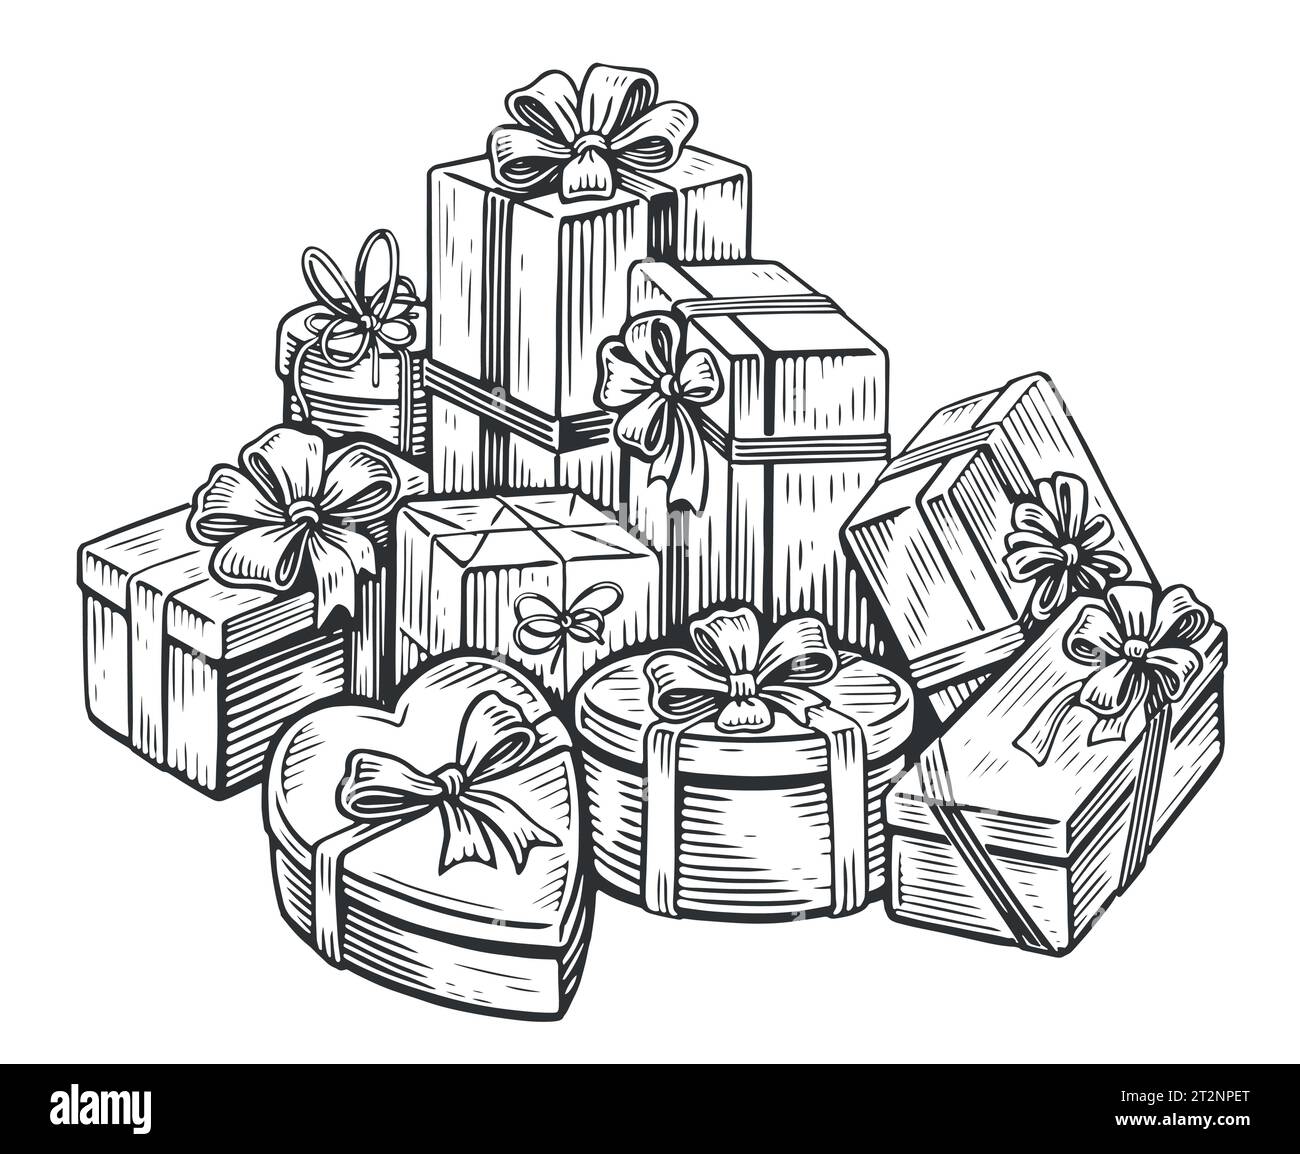 Una grande pila di confezioni regalo in carta da regalo con nastro e fiocchi per le feste. Regali natalizi e natalizi. Vettore di schizzo Illustrazione Vettoriale